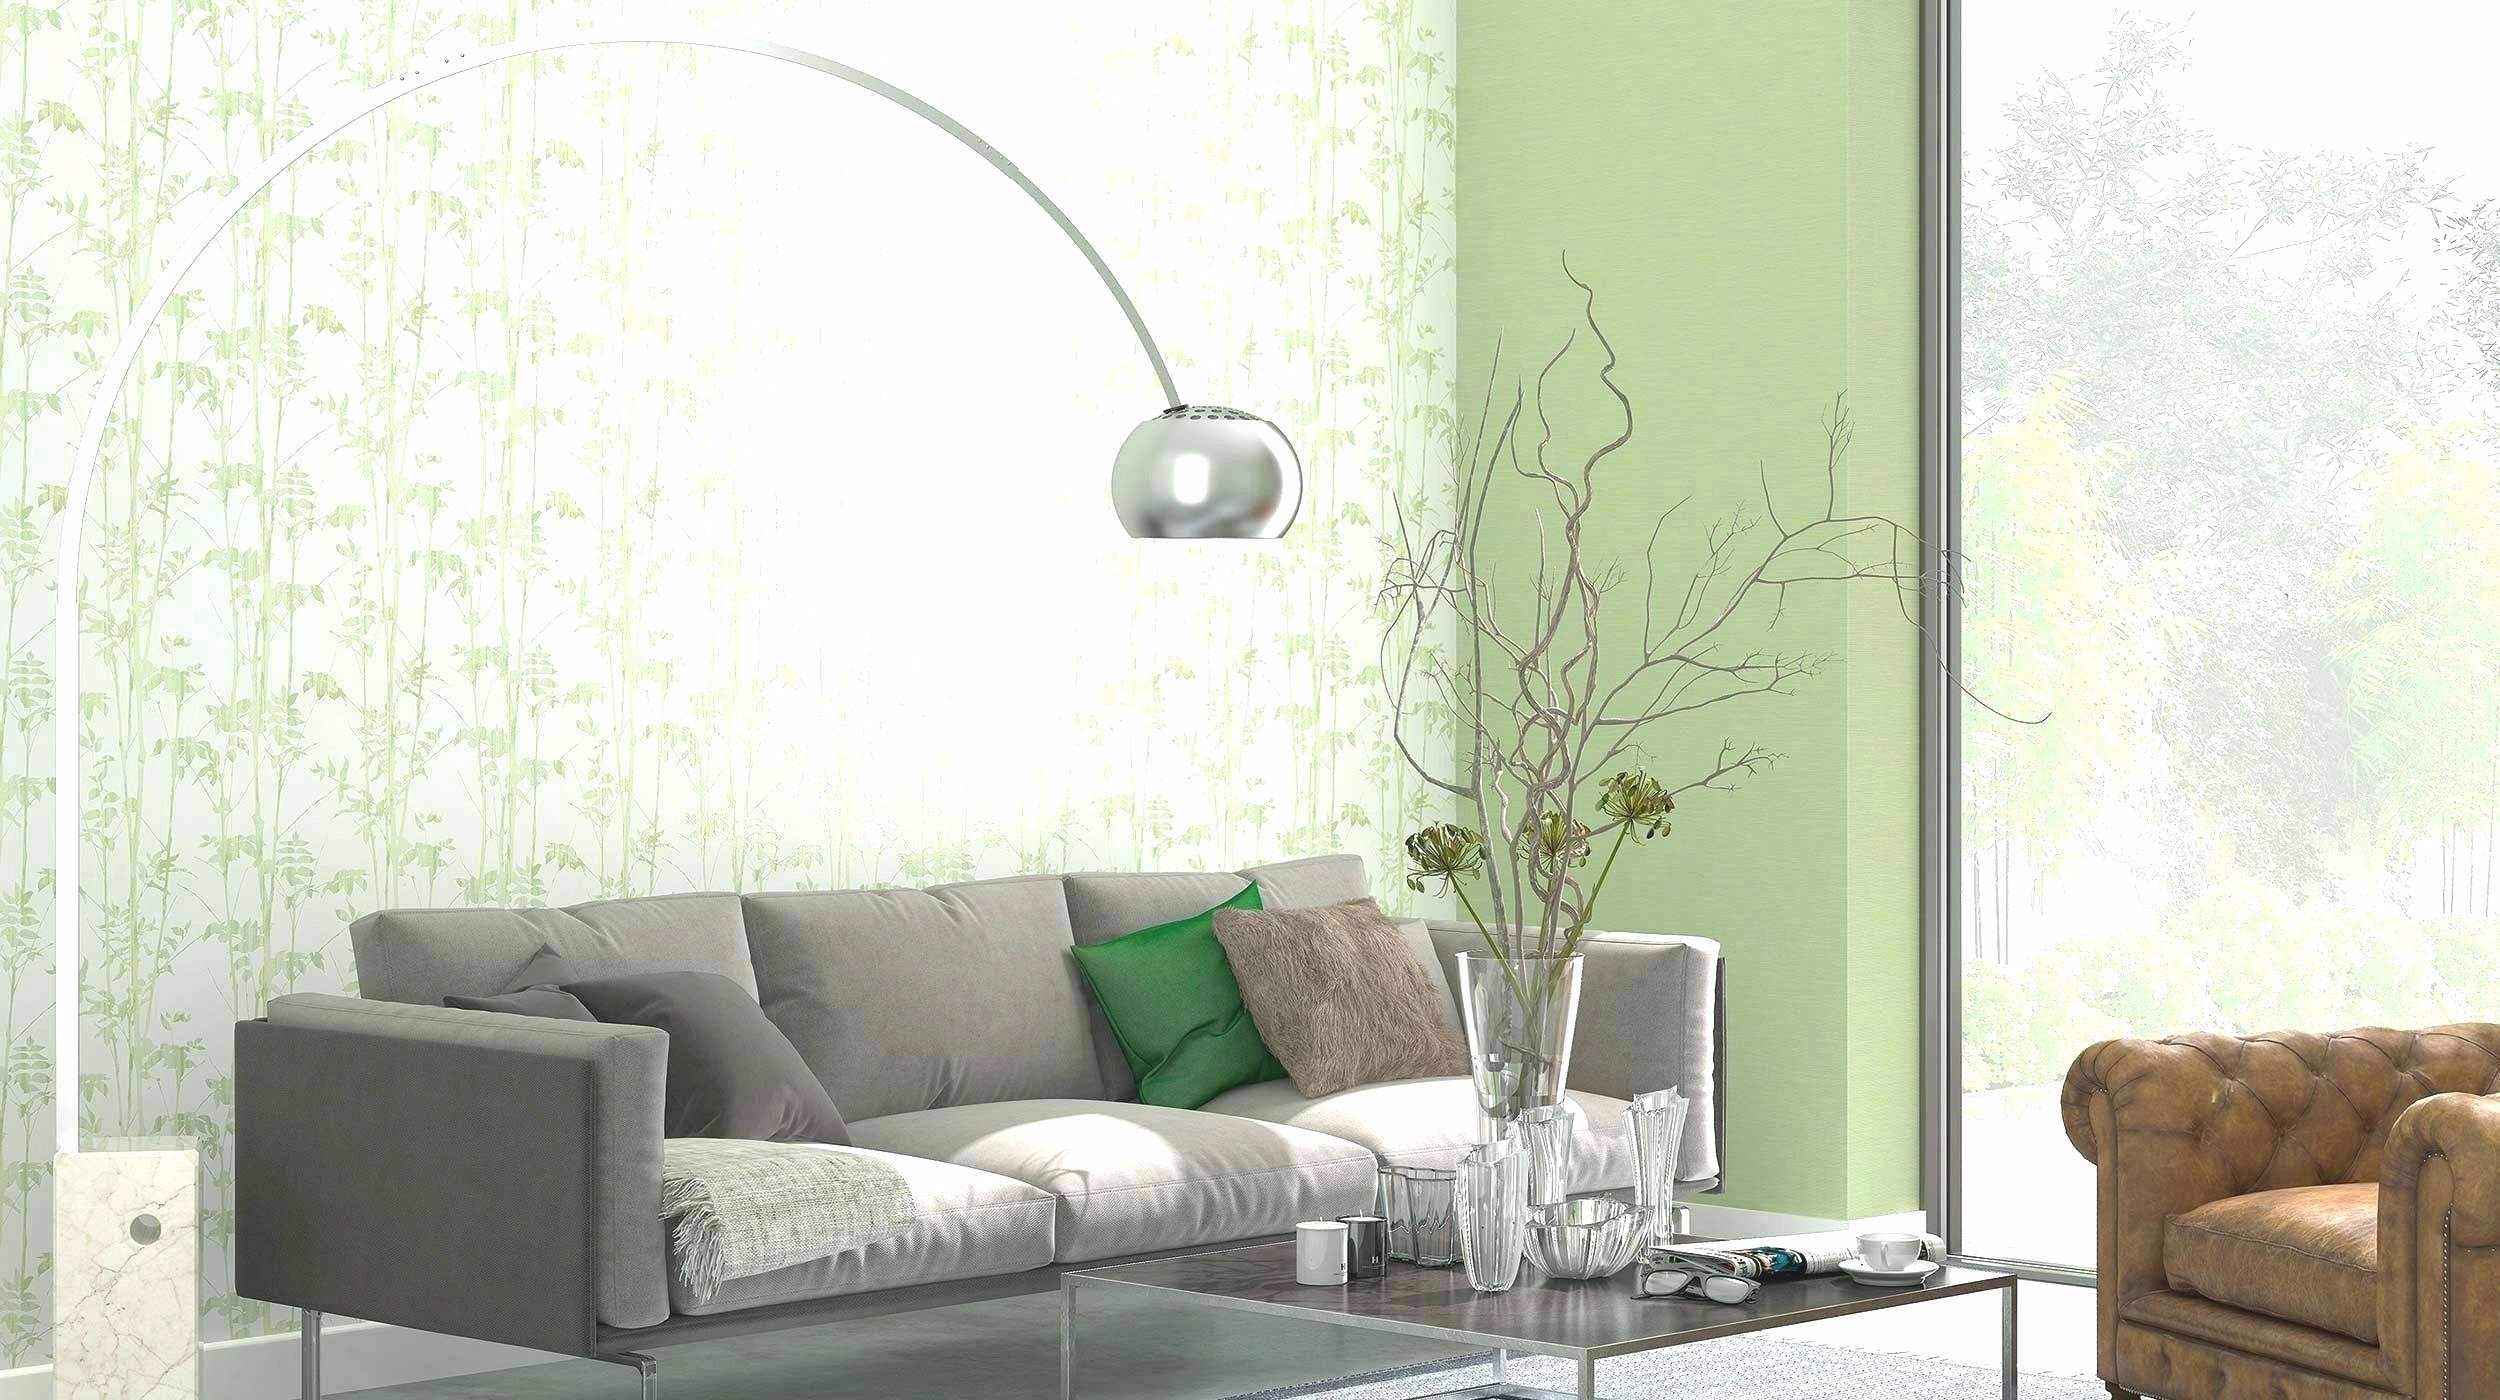 wohnzimmer deko online shop das beste von 50 luxus von landhaus deko shop planen of wohnzimmer deko online shop